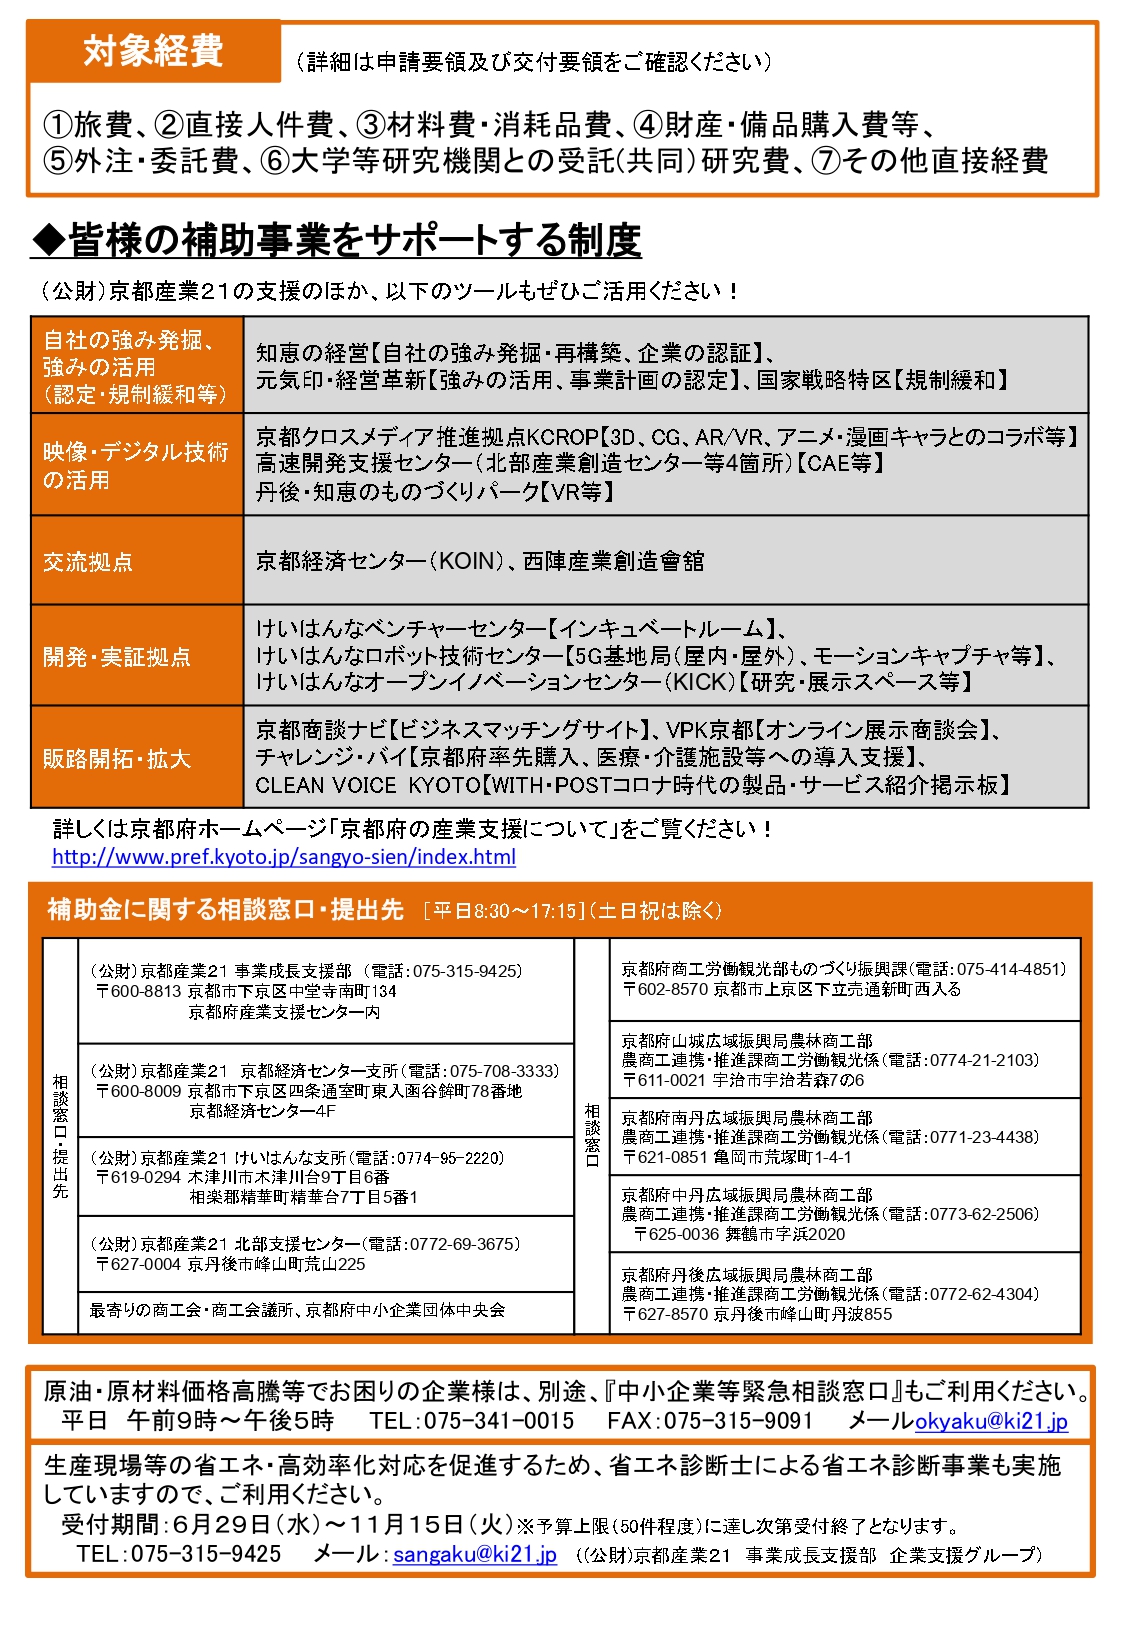 『京都エコノミック・ガーデニング支援強化事業補助金』募集のお知らせ